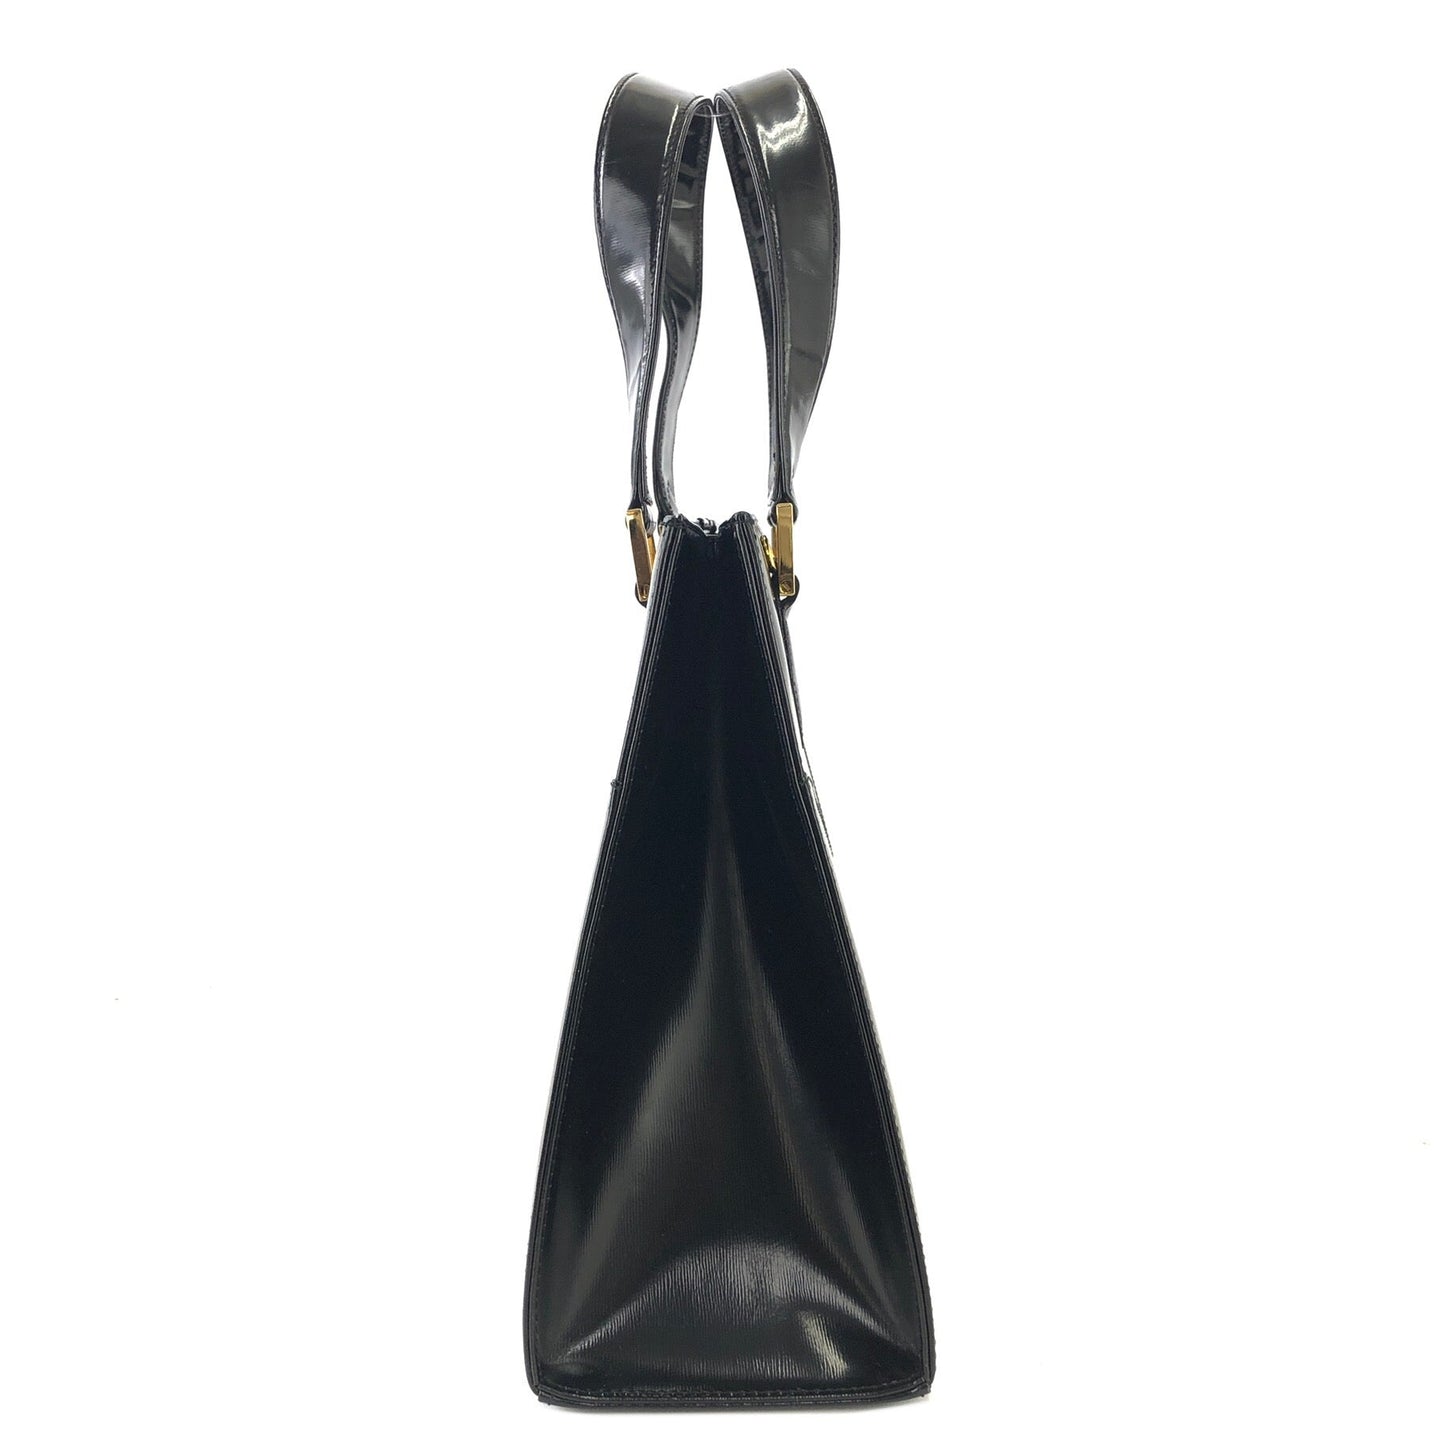 Yves Saint Laurent YSL logo charm Handbag Shoulder bag Black Vintage Old fgbhs2